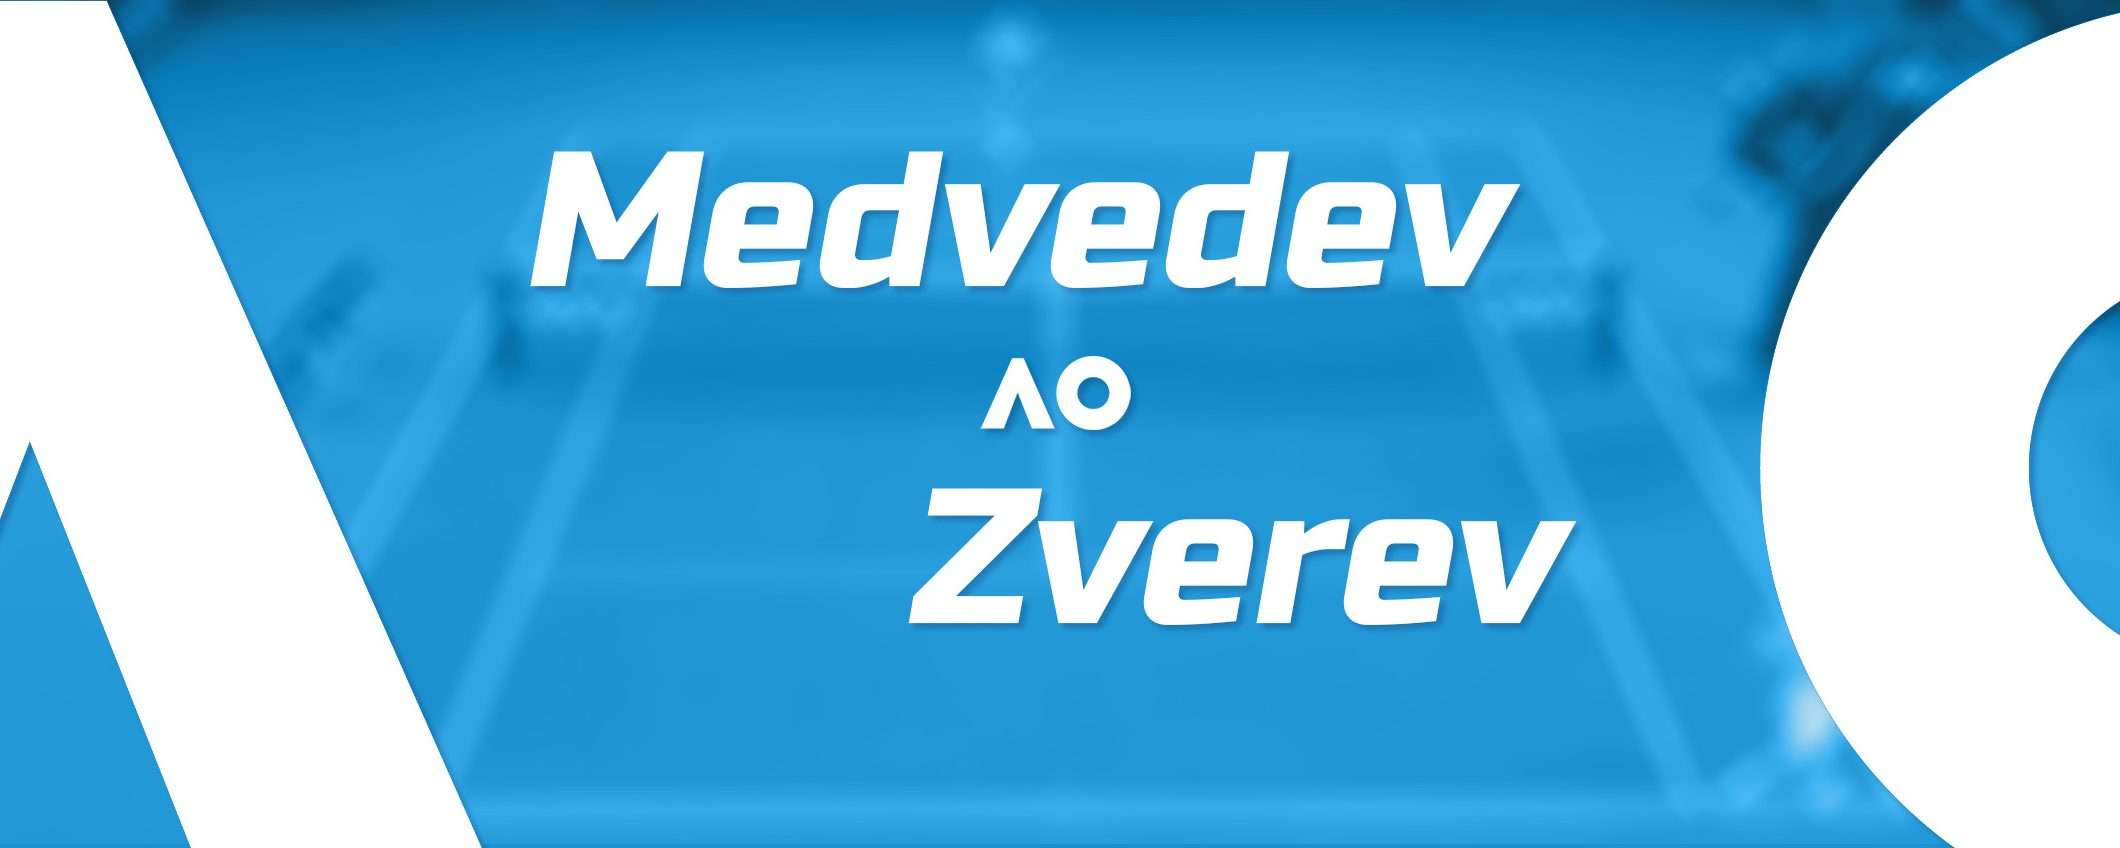 Come vedere Medvedev-Zverev in streaming dall'estero